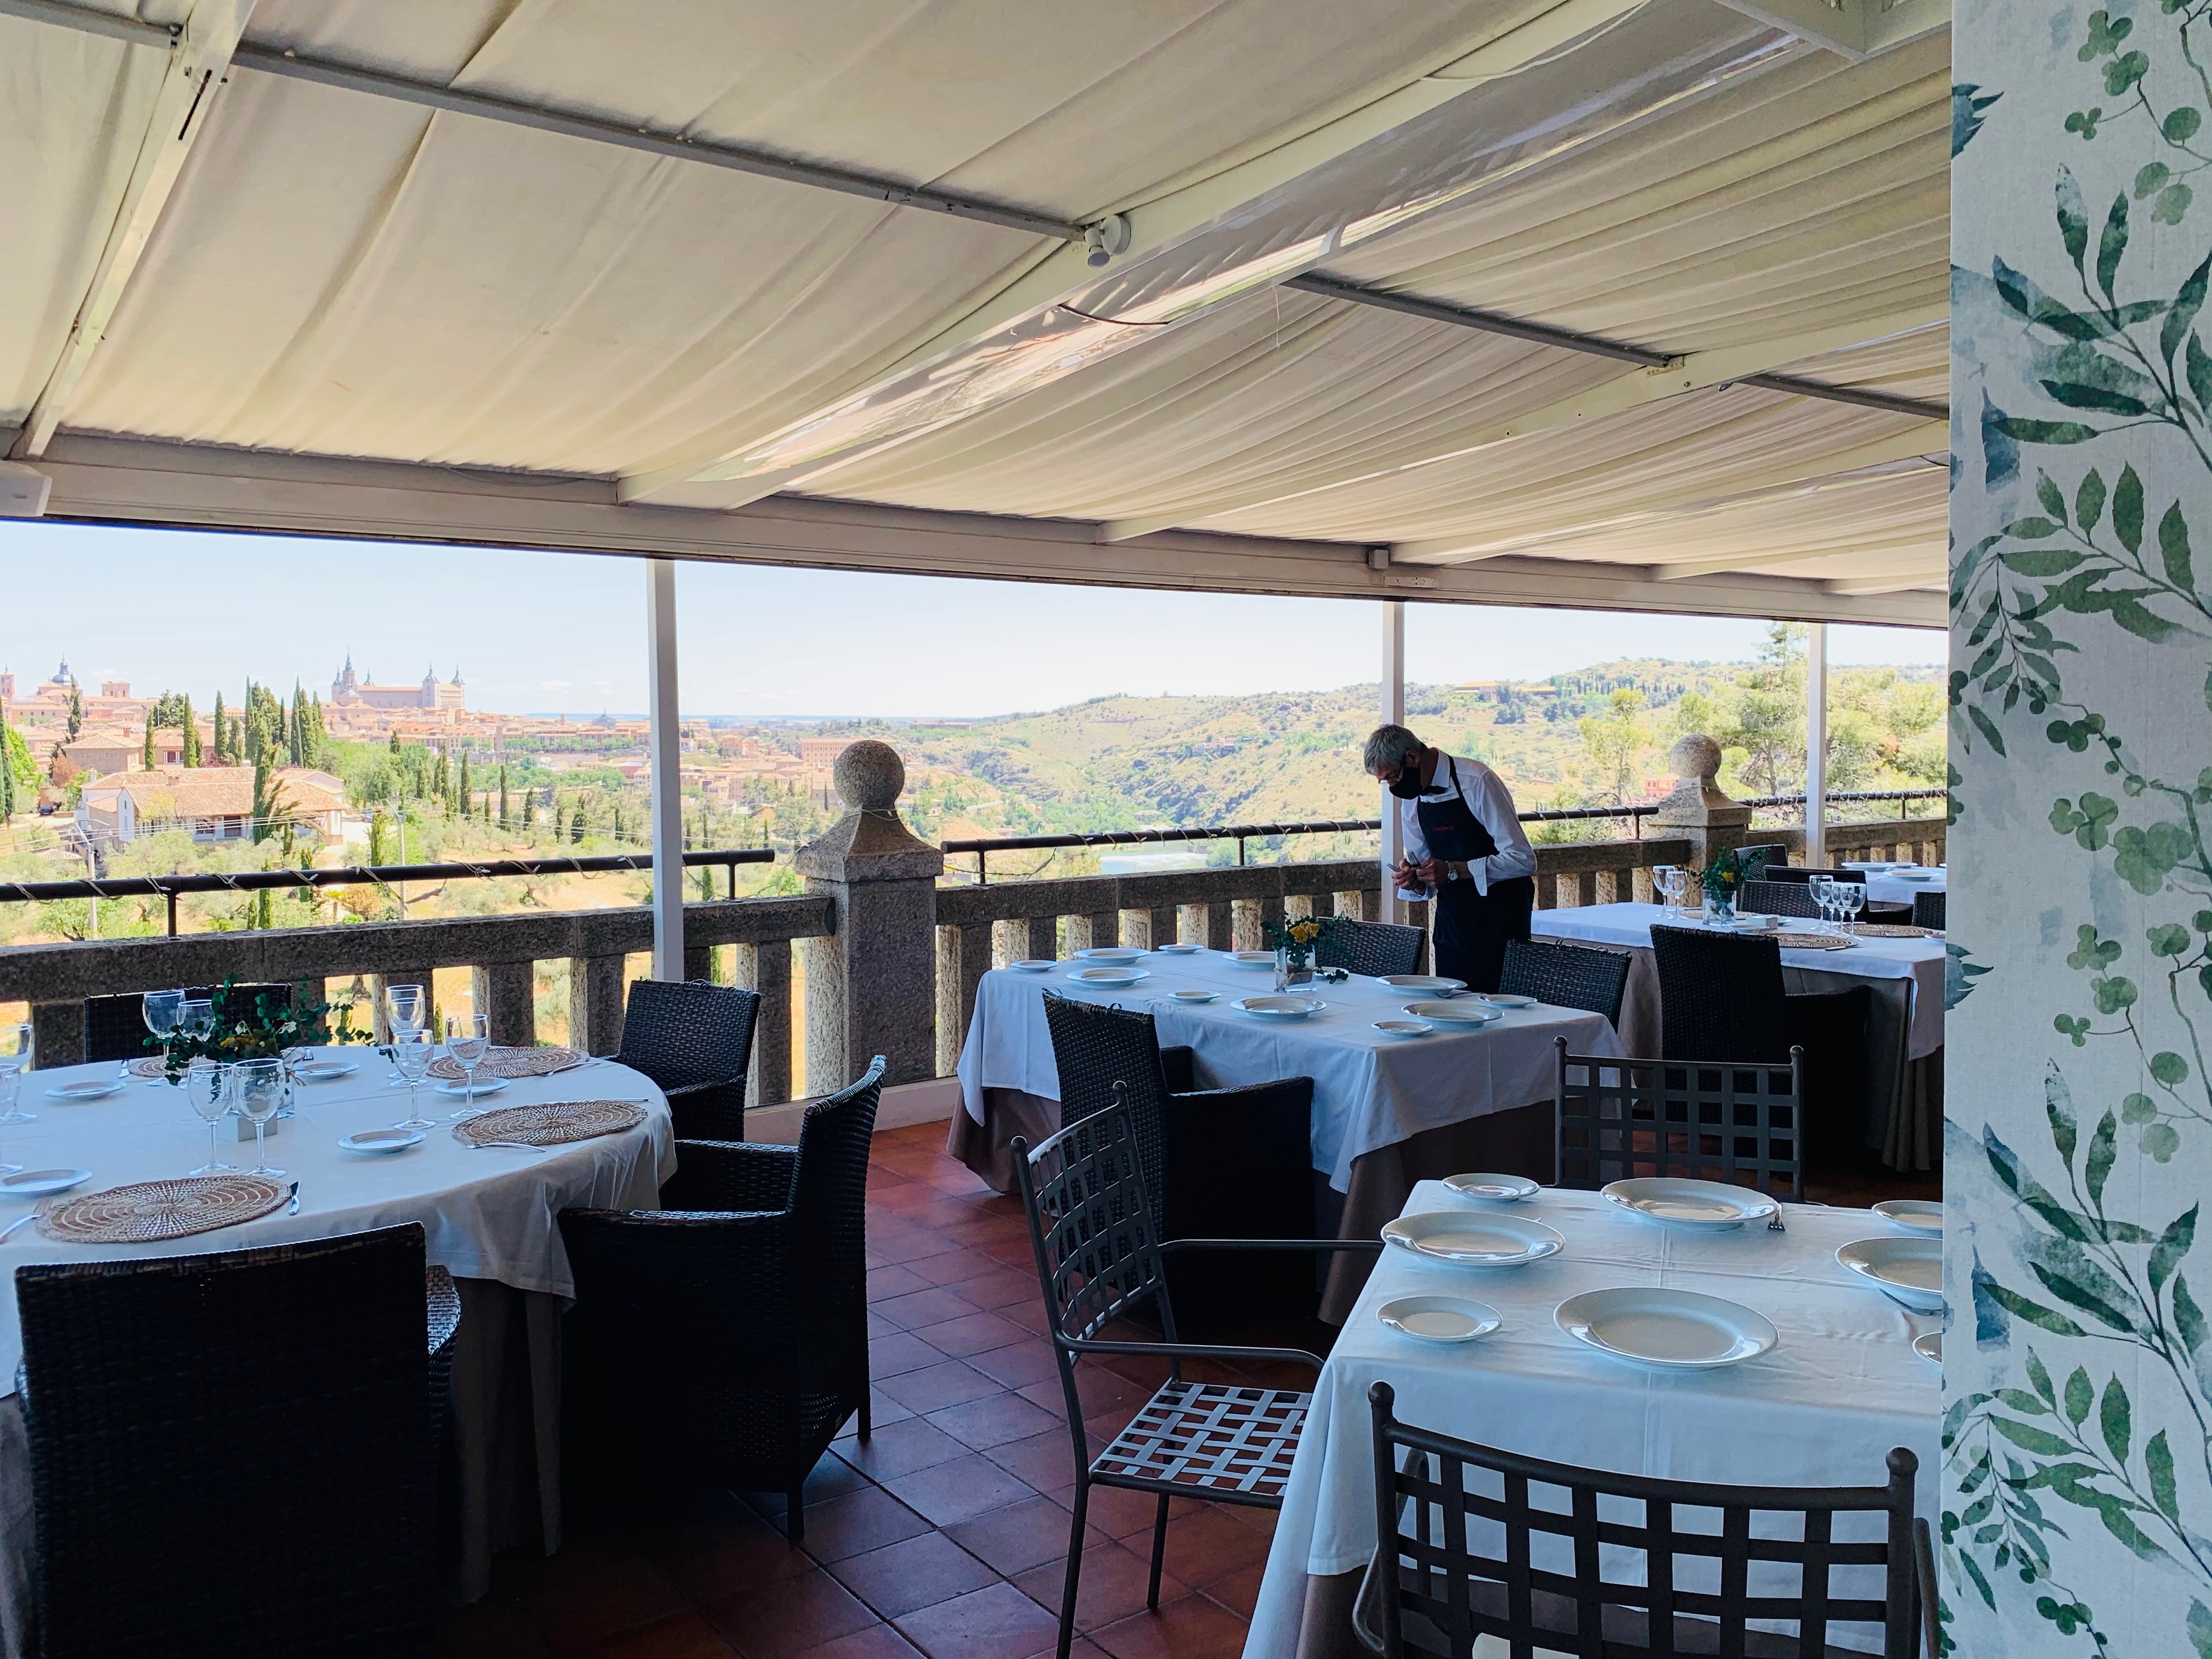 Restaurante situado en un entorno natural y paisajístico  con vistas panorámicas a la ciudad de Toledo con lo mejor de la cocina tradicional y mediterránea.                                    